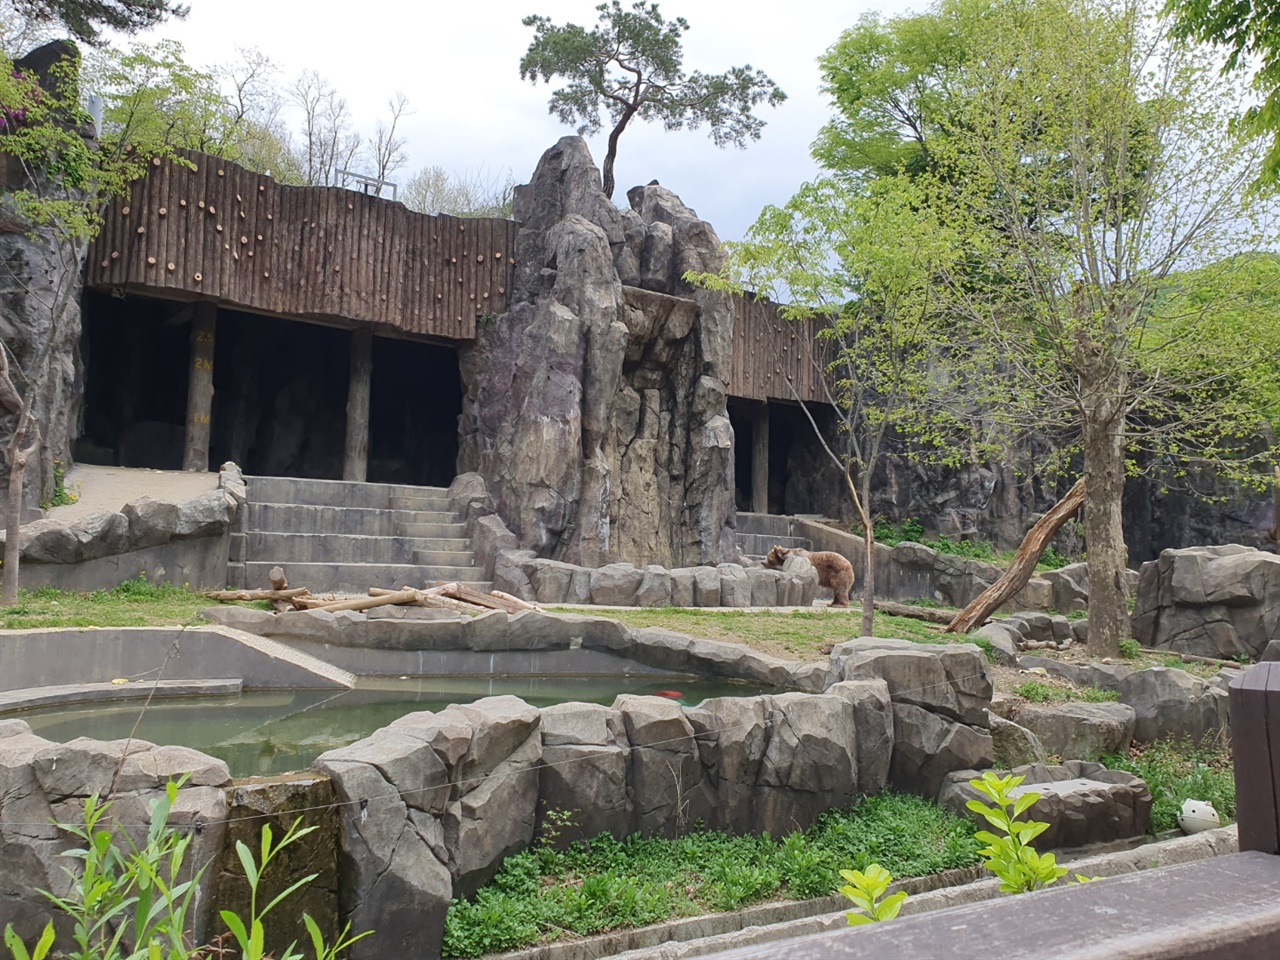 본래 서울 창경원에 위치한 동물원은 창경궁으로 새롭게 복원을 결정하며 지금의 위치에 욺기게 되었다. 한국에서 가장 큰 동물원이며 지금도 서울시에서 관리를 맡고 있다.